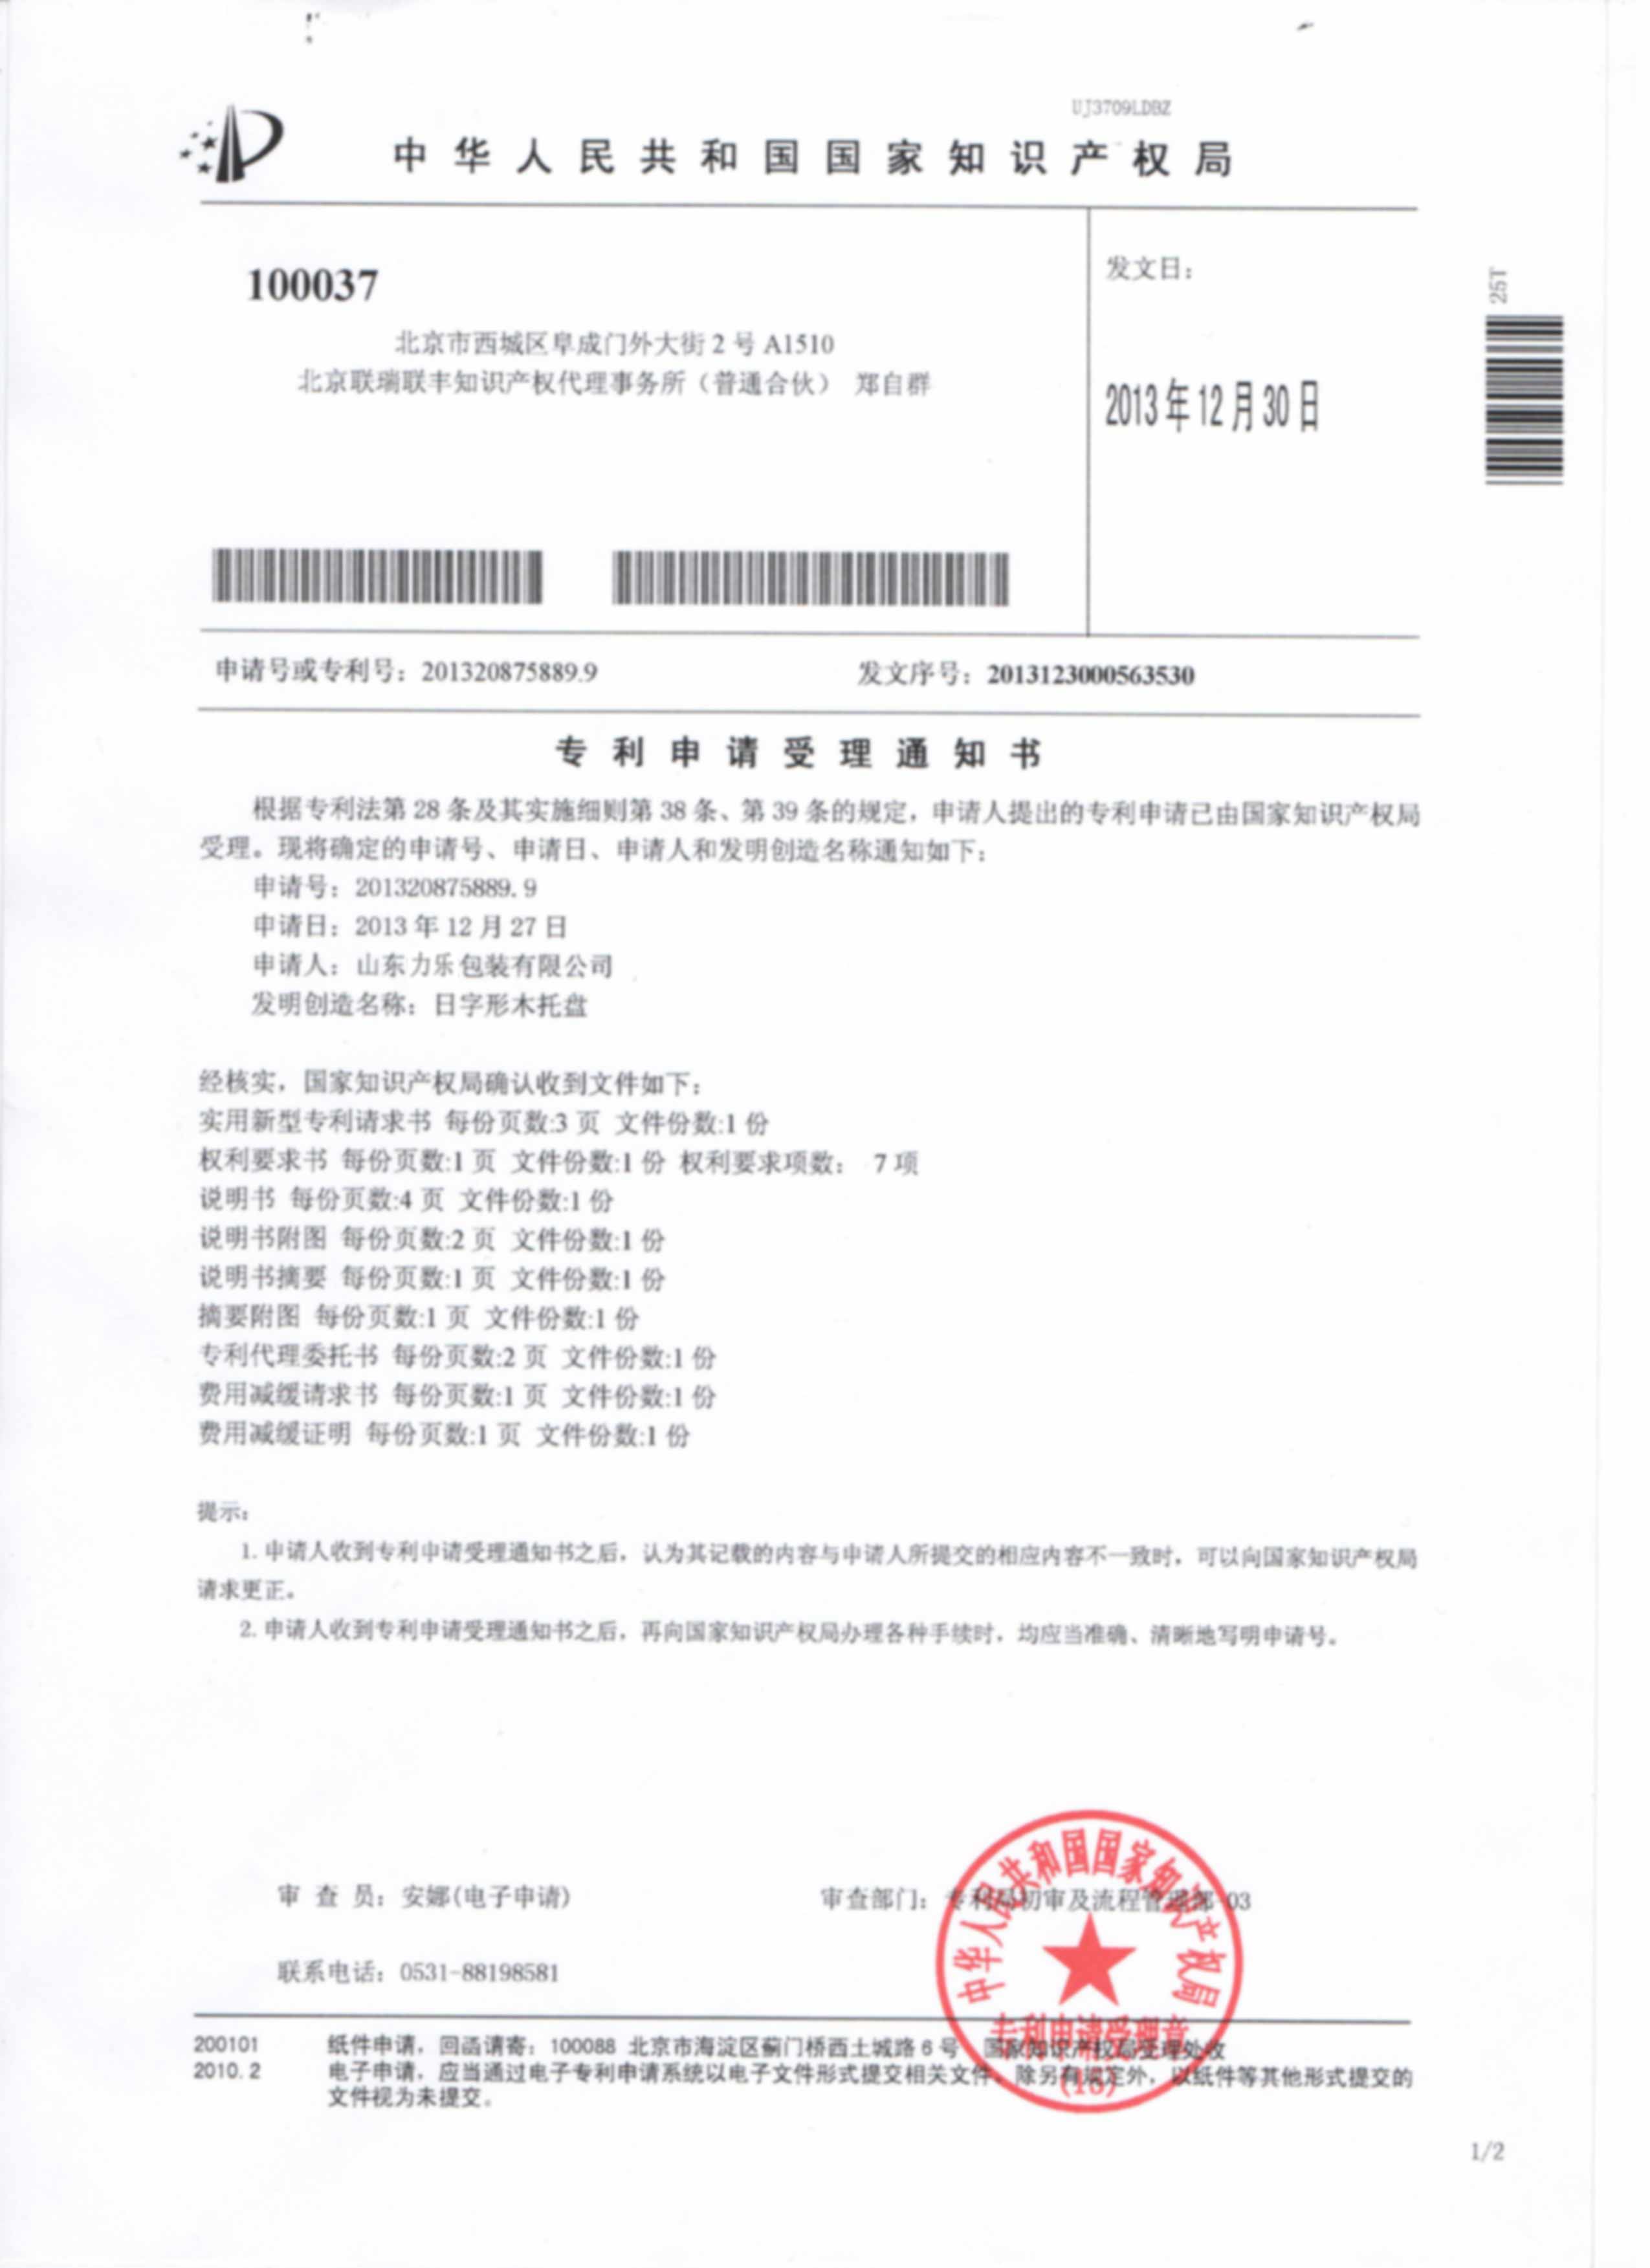 日式托盘专利证书